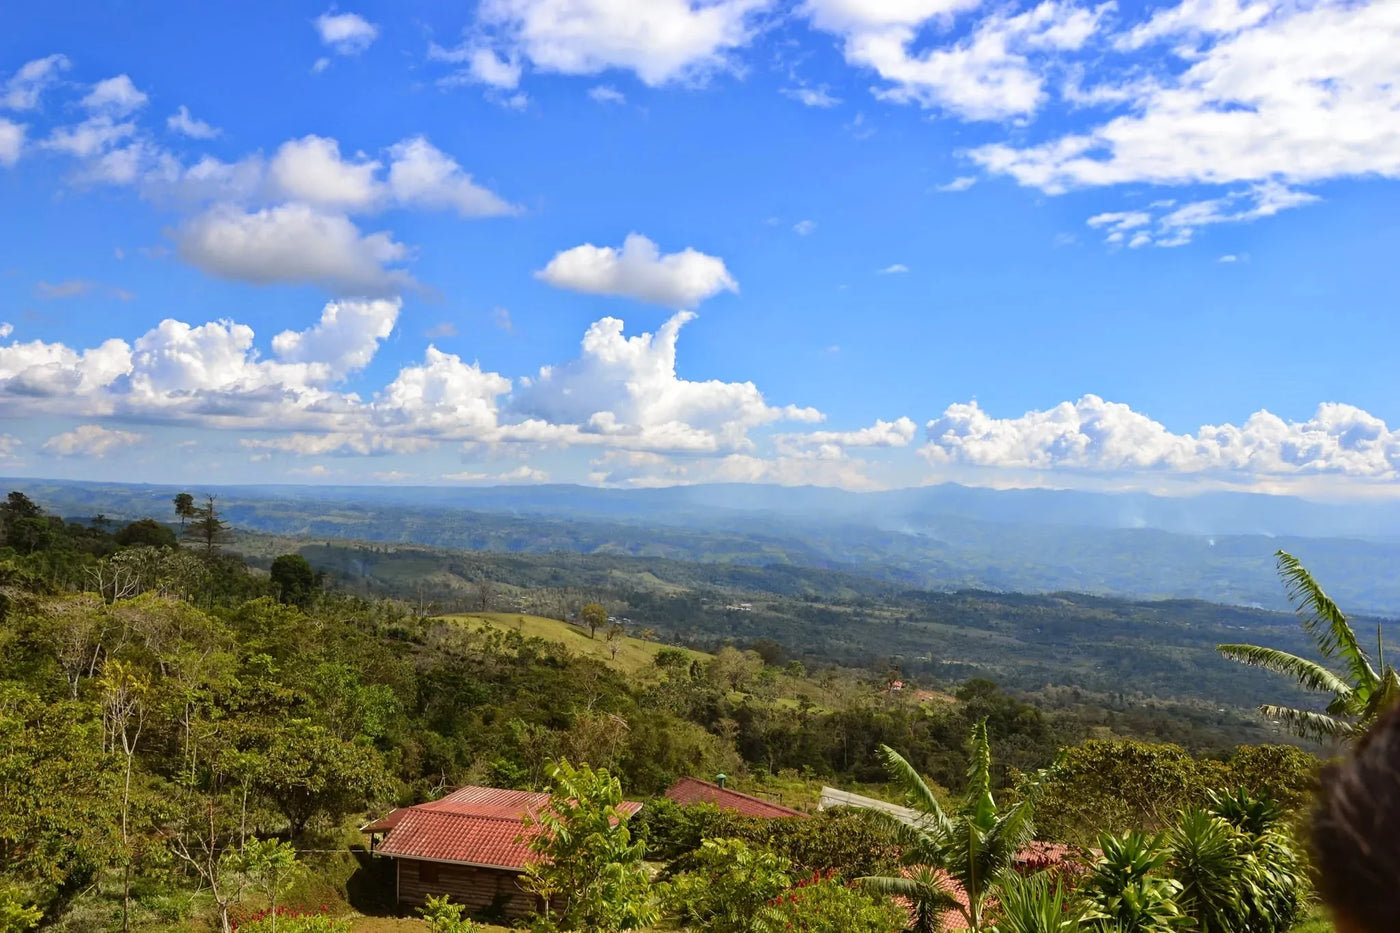 Landscape view of the Coffea Diversa coffee farm in Costa Rica